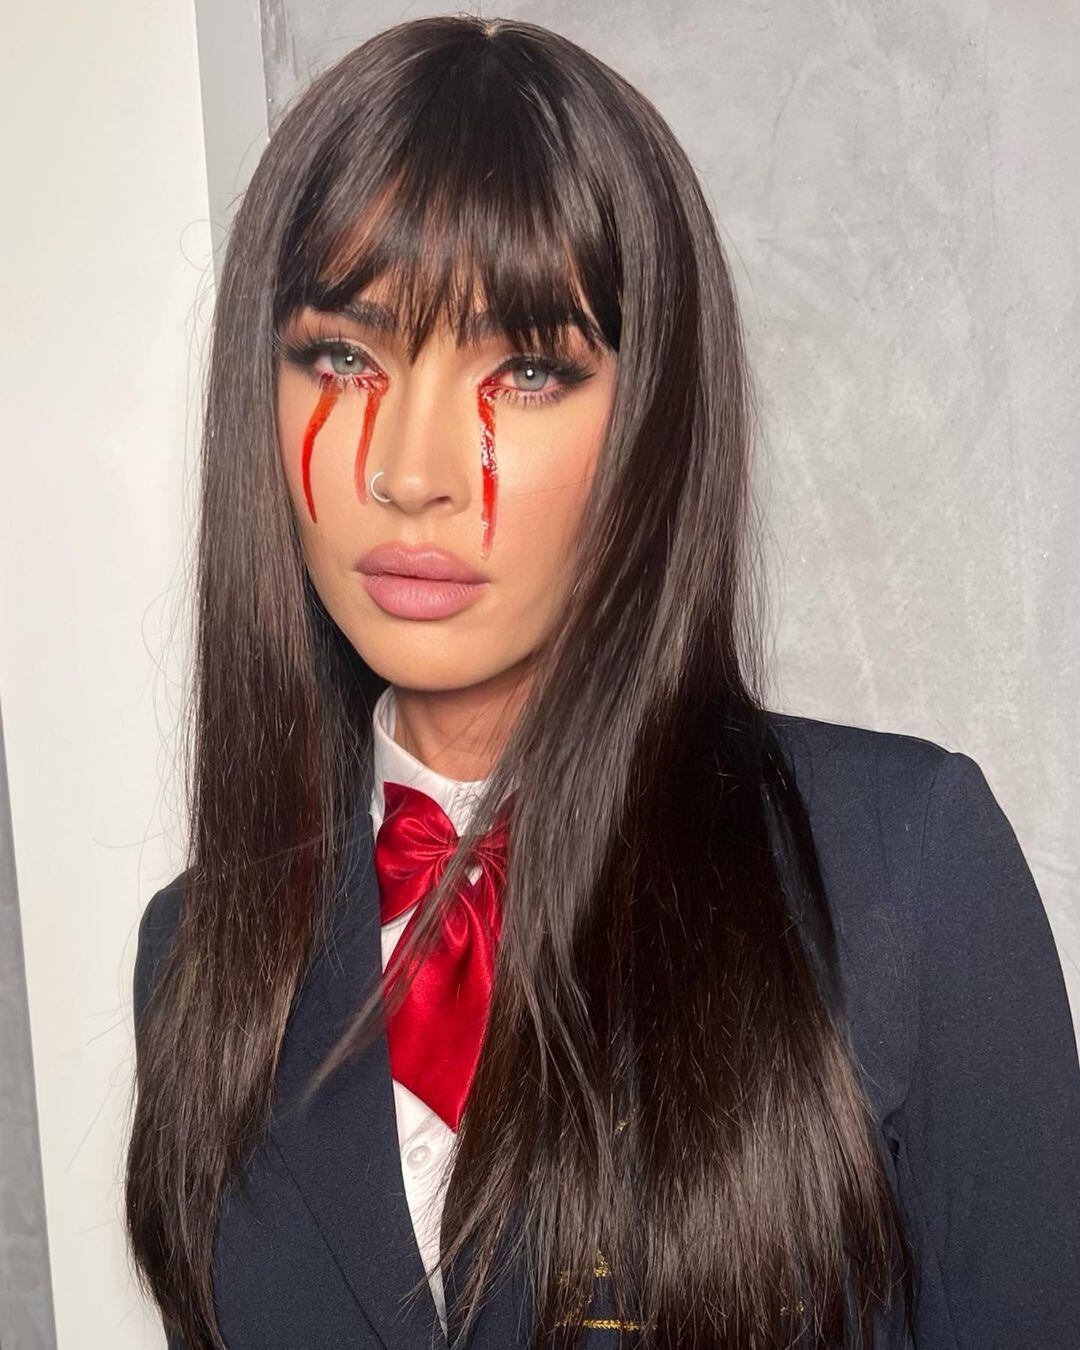 La actriz Meghan Fox se lució con un traje de la asesina colegiala Gogo Yubari.